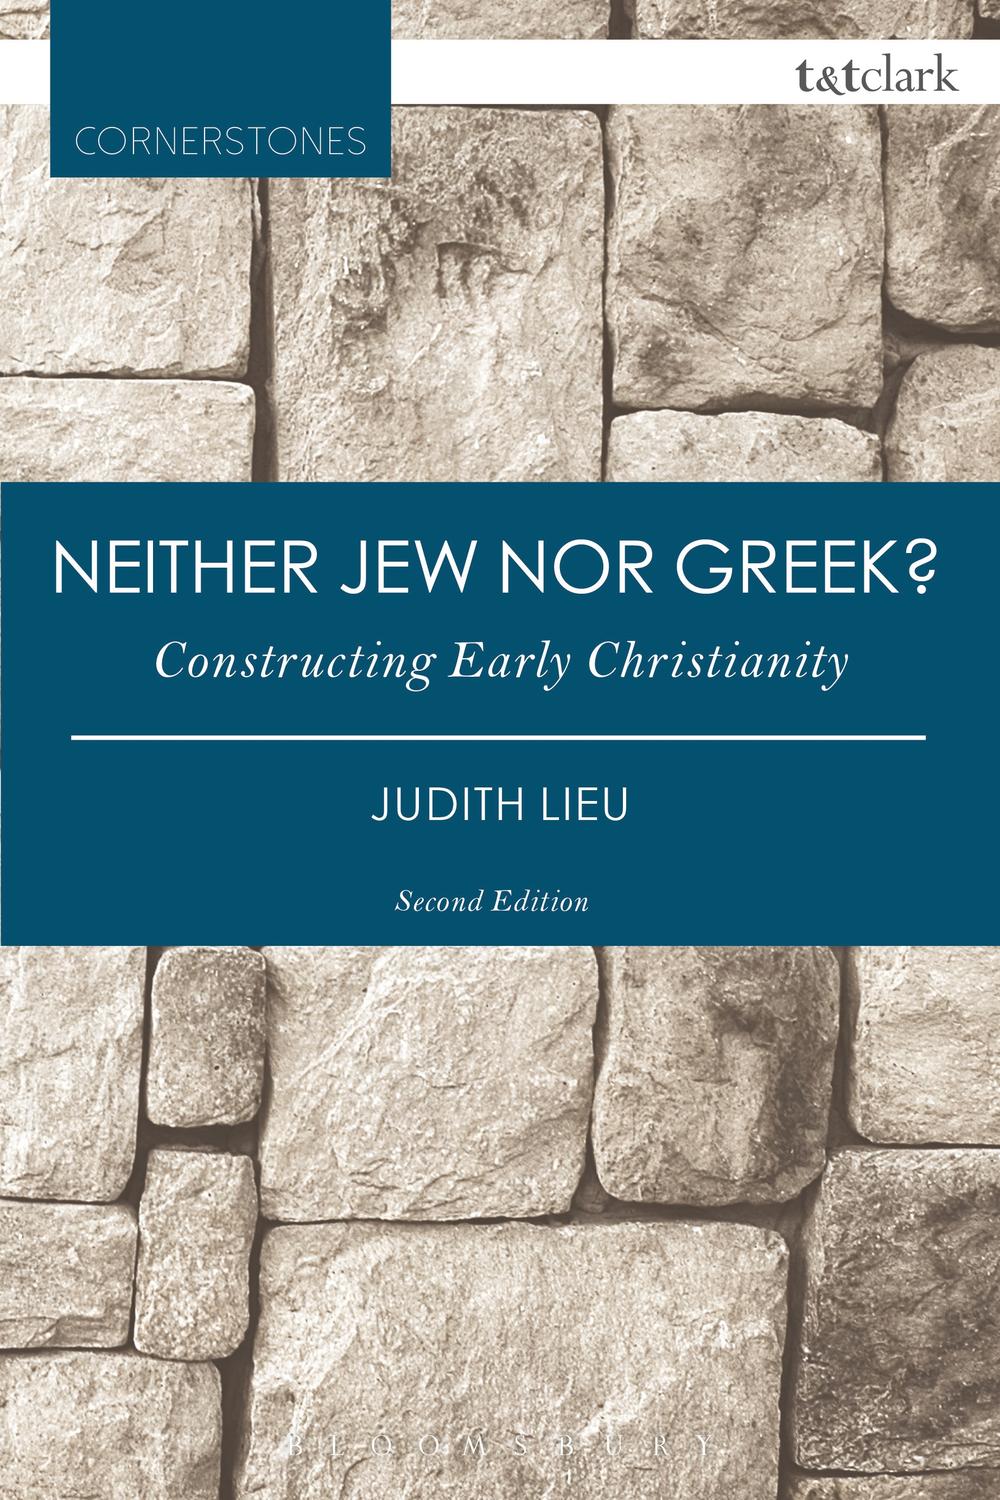 Neither Jew nor Greek? - Judith Lieu